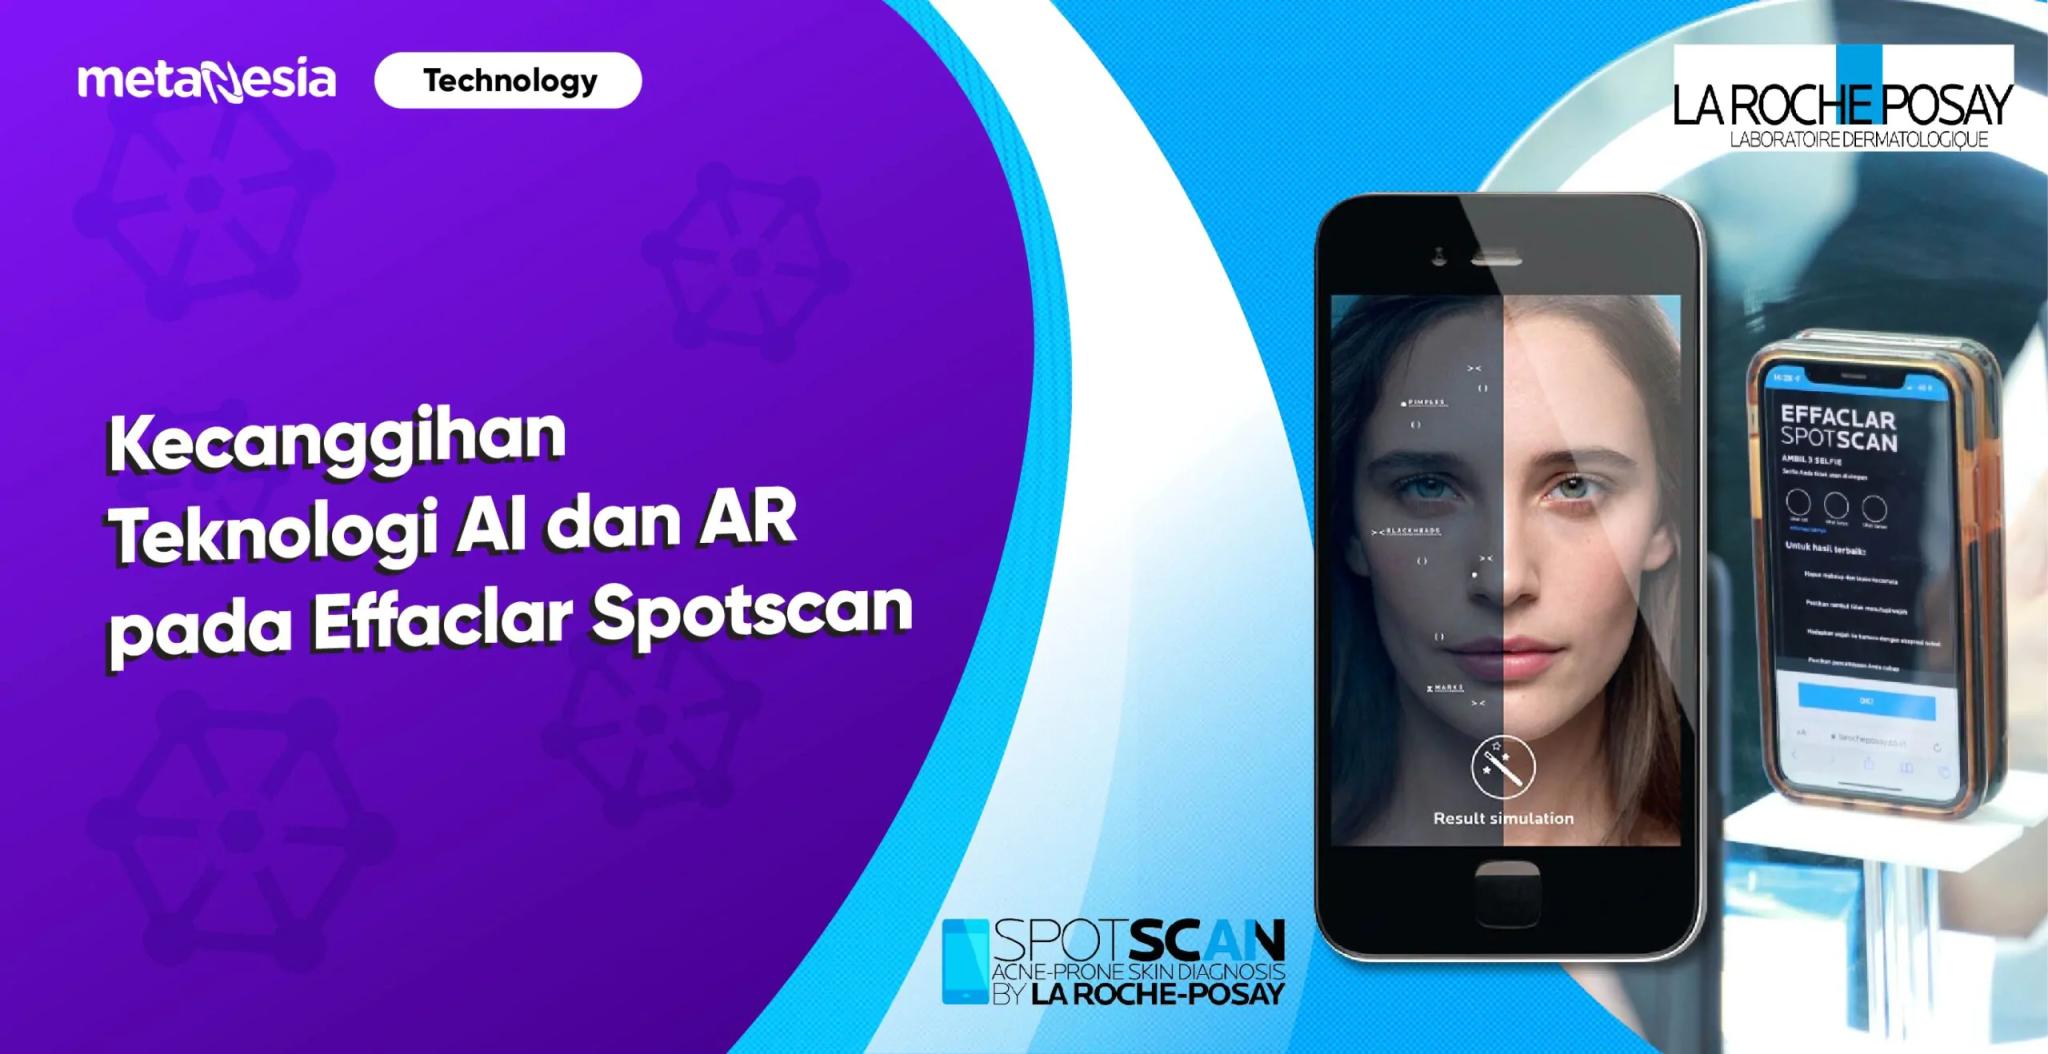 Kecanggihan Teknologi AR dan AI pada Spotscan La Roche-Posay